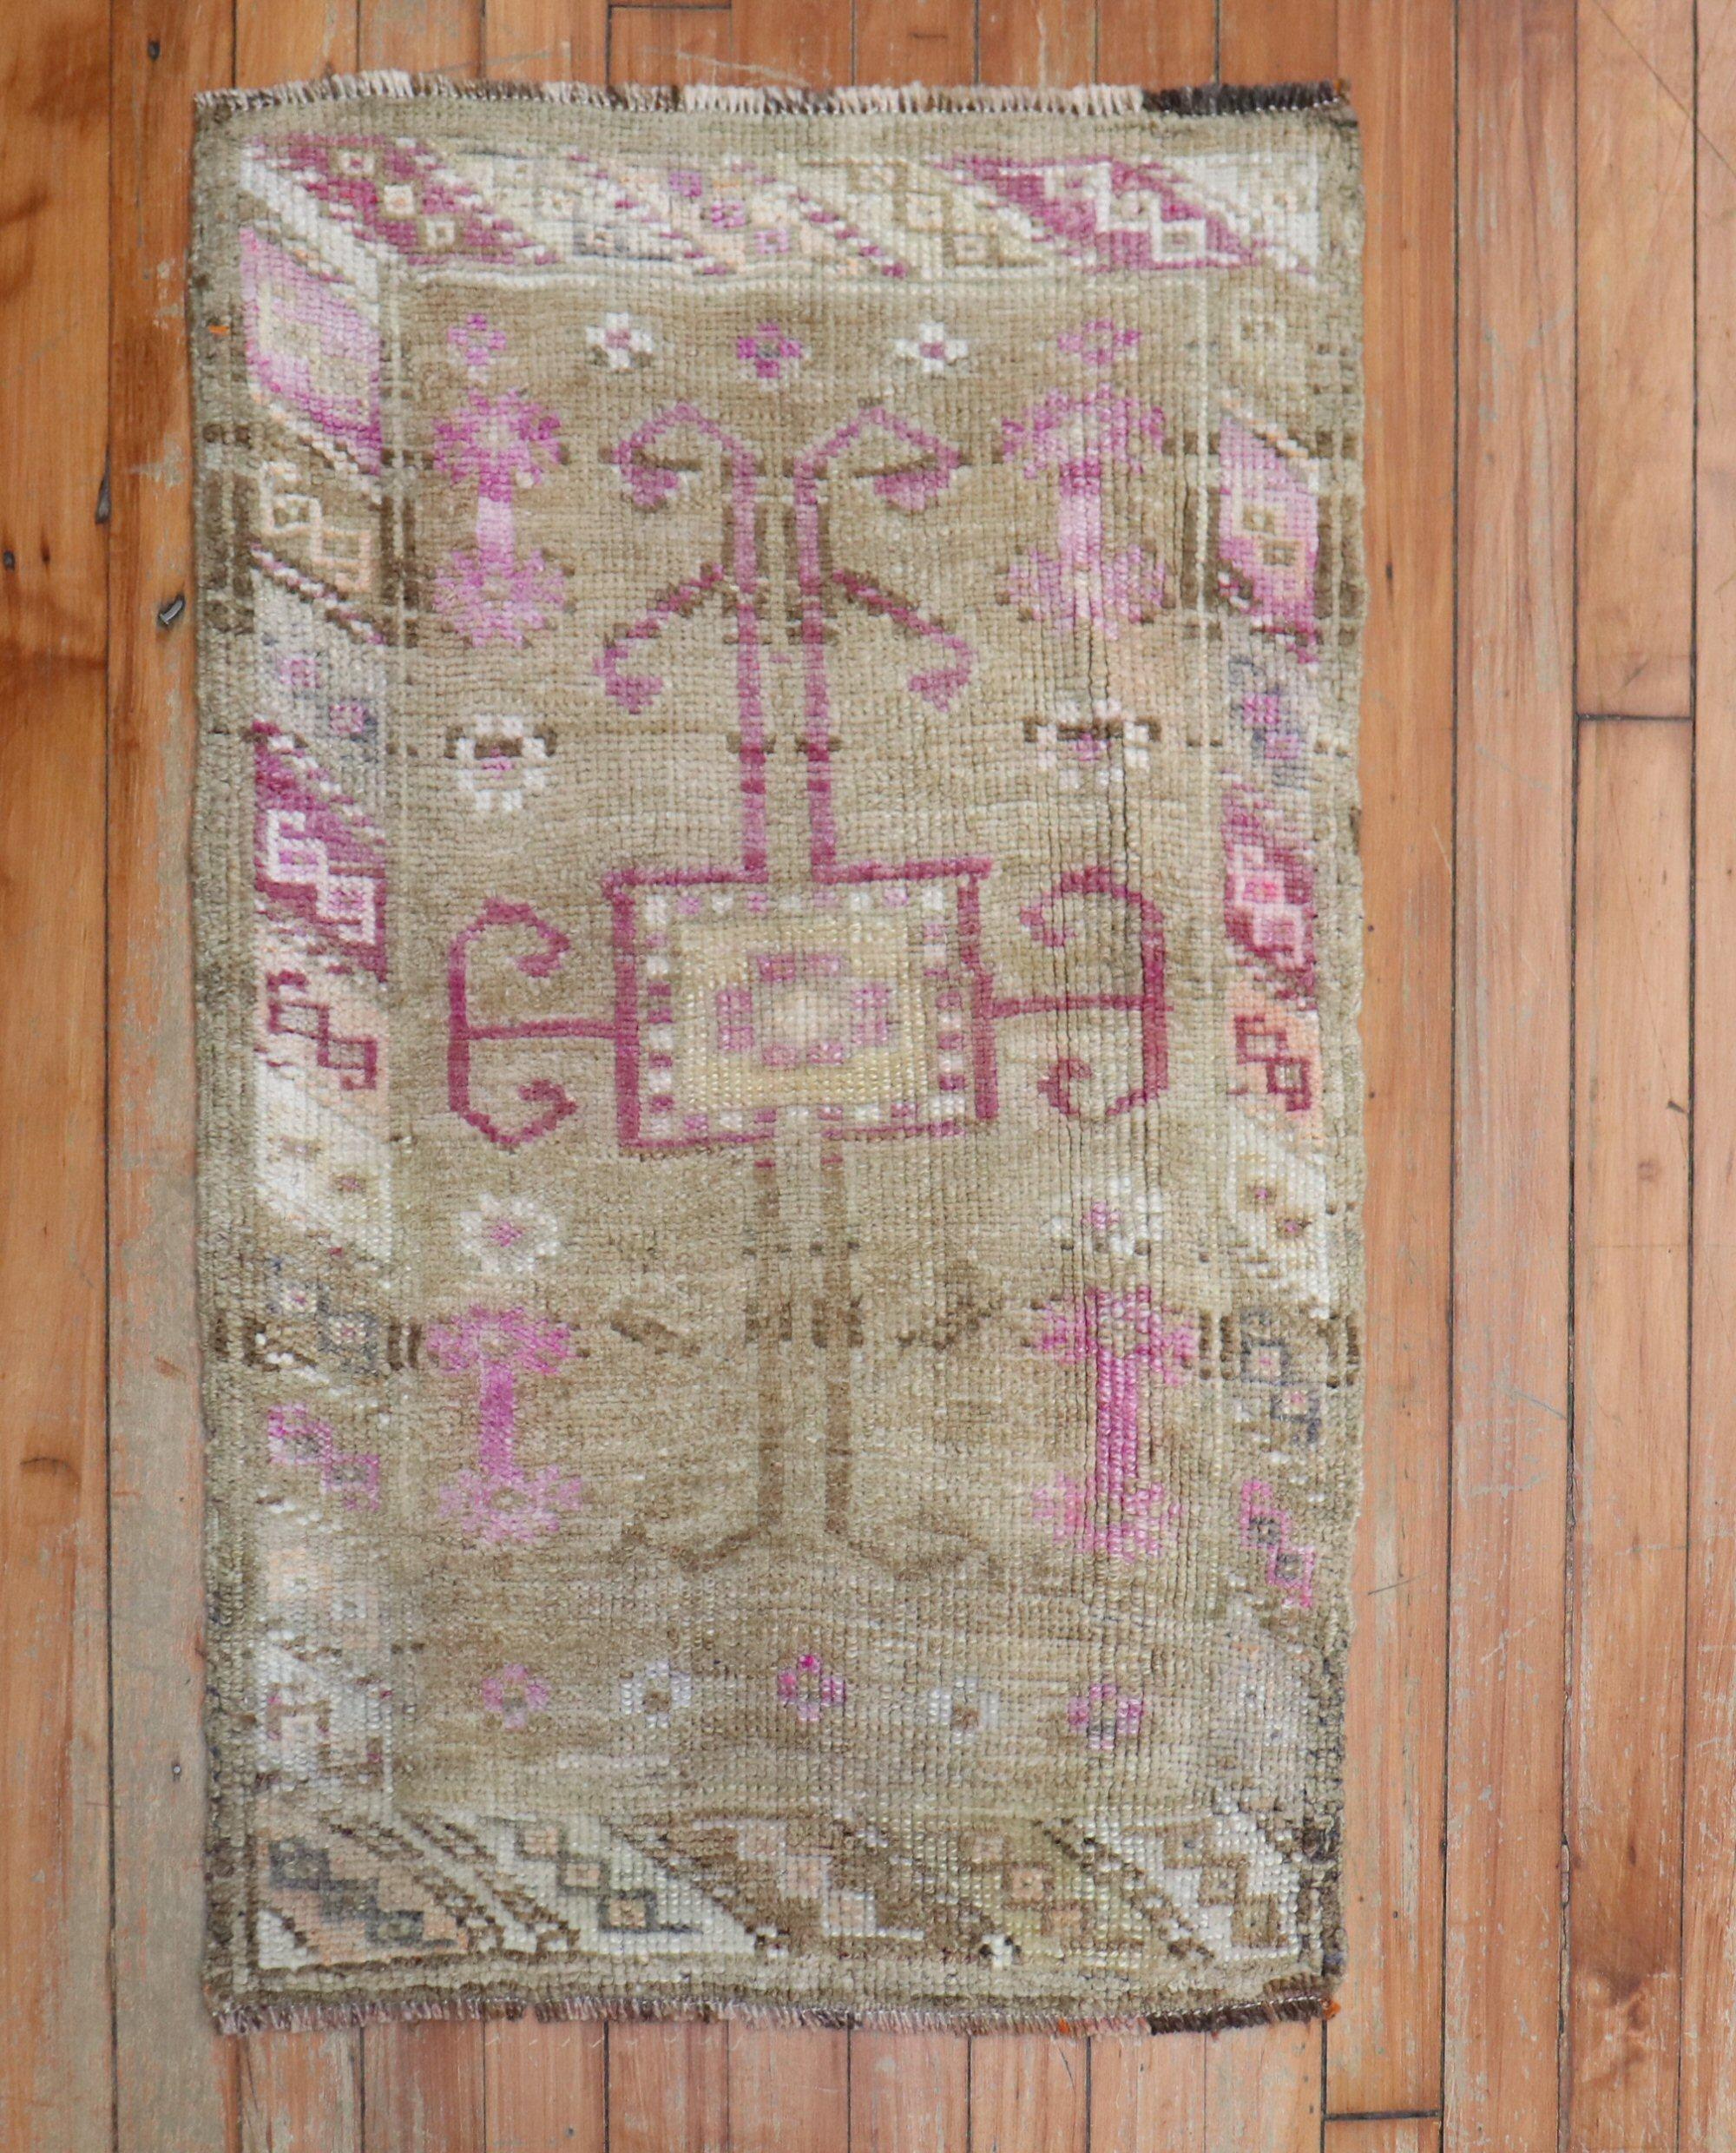 türkischer teppich im miniaturformat aus der mitte des 20. jahrhunderts mit rosafarbenen punkten auf einem überwiegend braunen feld

Maße: 1'9' x 2'9